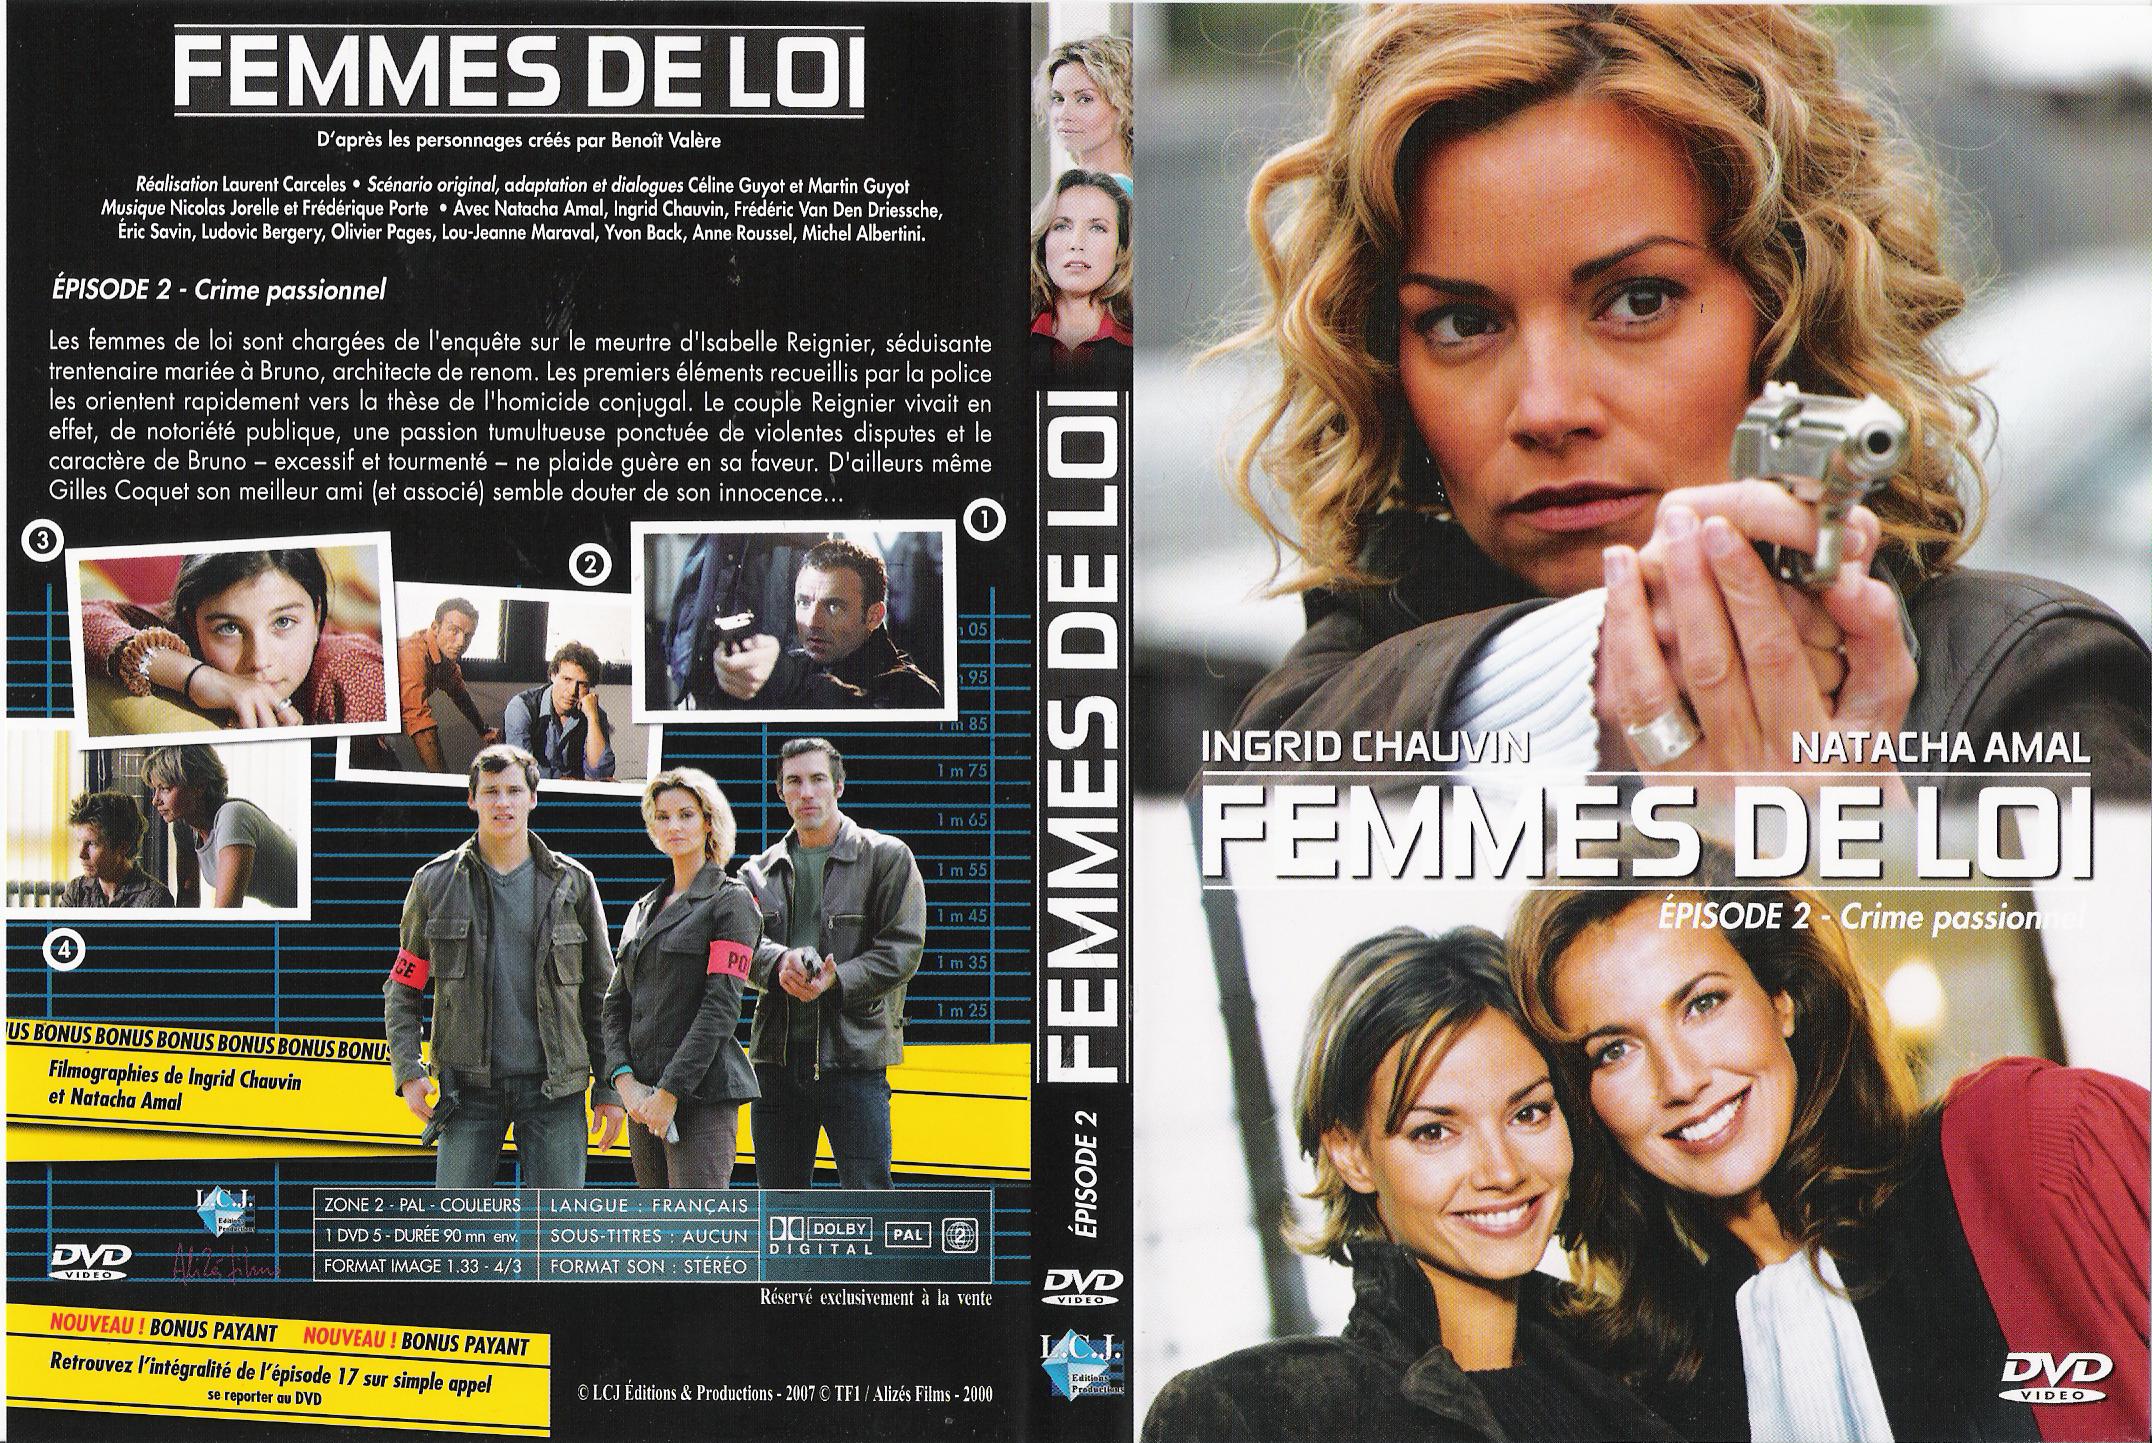 Jaquette DVD Femmes de loi  pisode 2